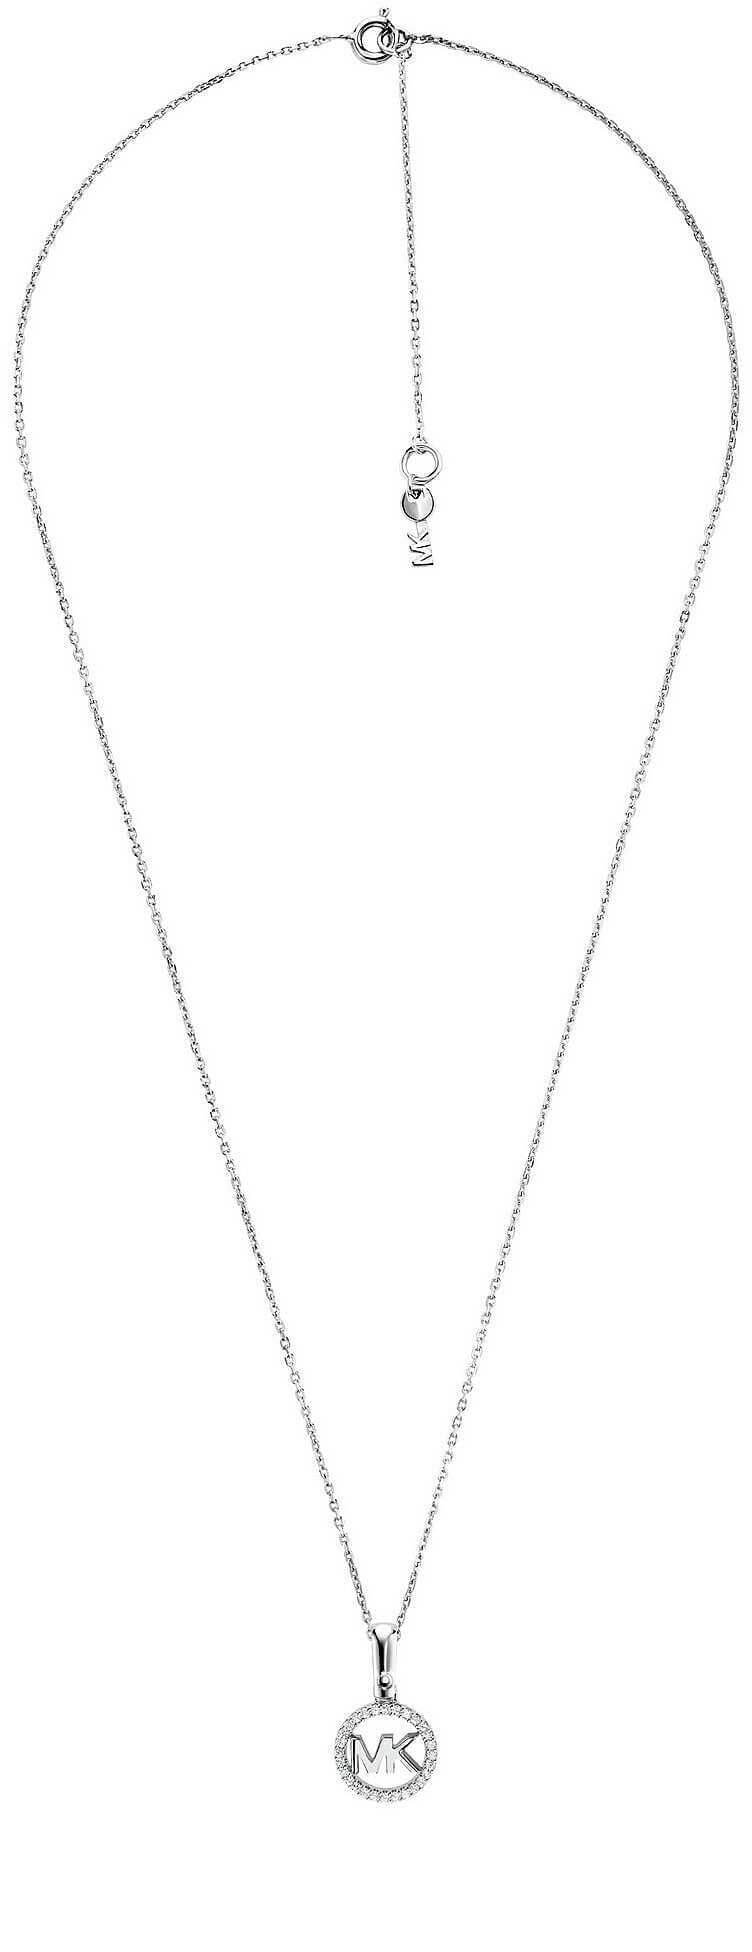 Michael Kors -  Stříbrný náhrdelník s třpytivým přívěskem MKC1108AN040 (řetízek, přívěsek)